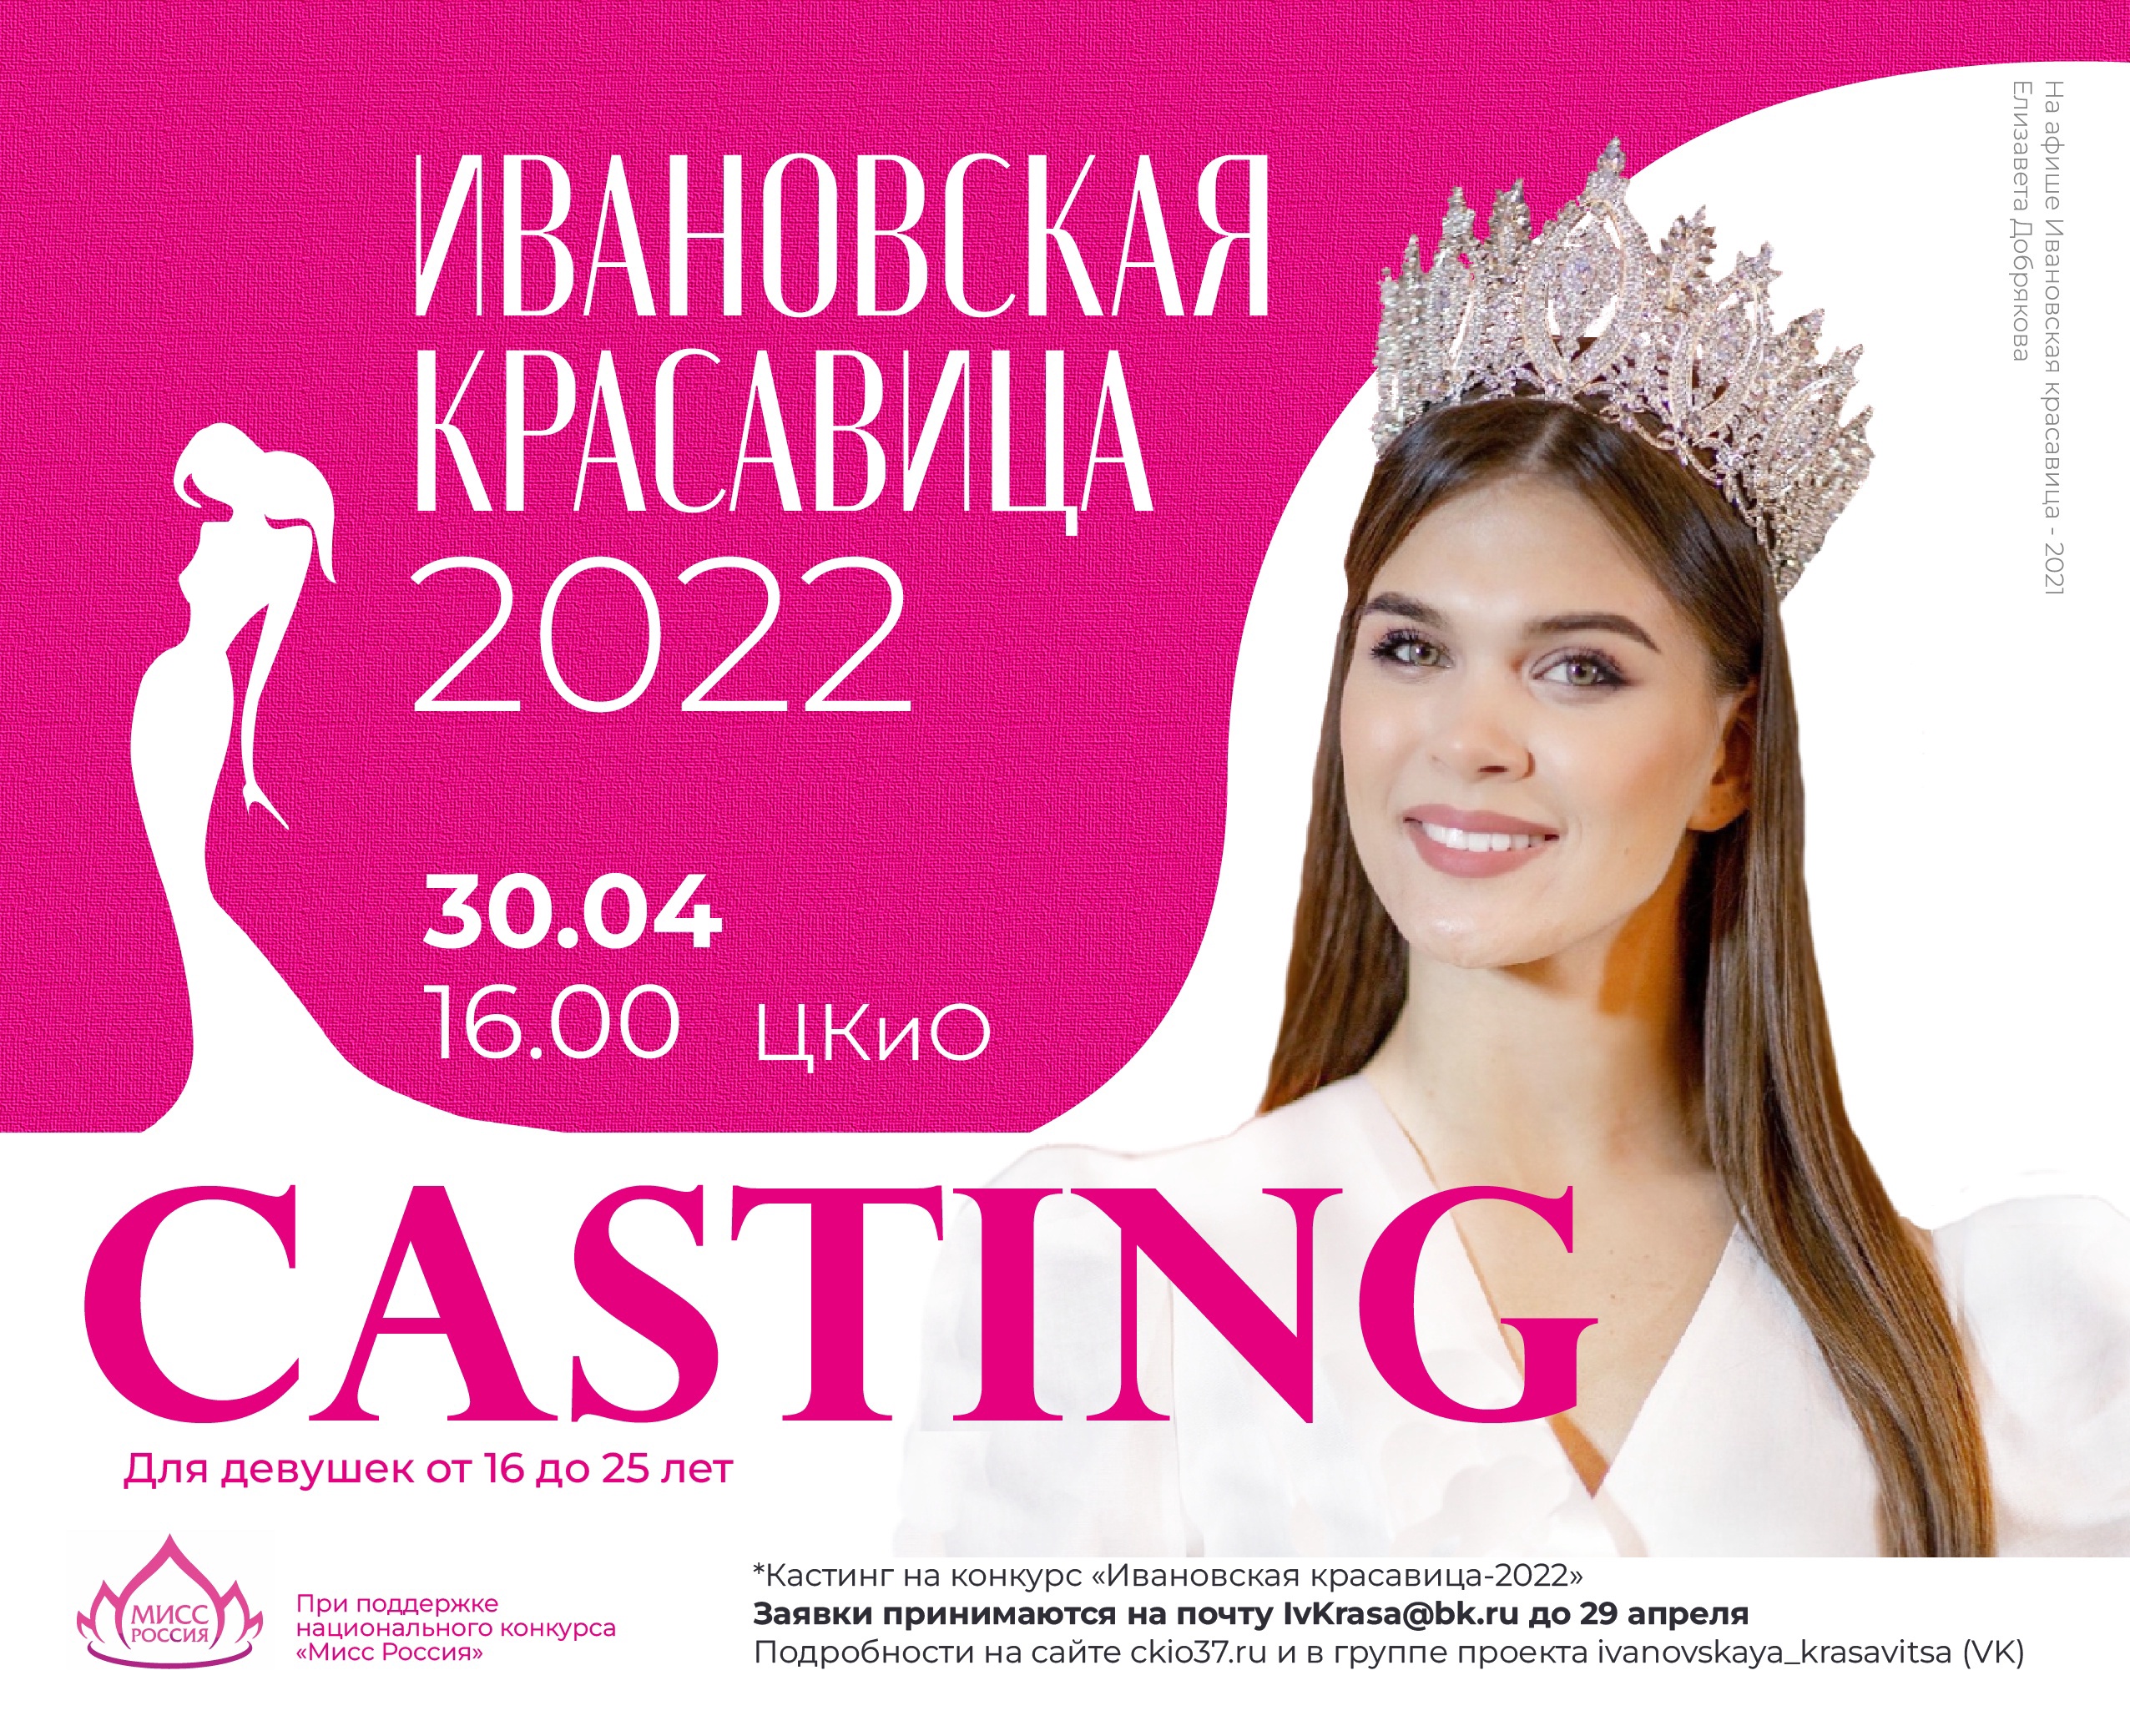 Стартовал прием заявок на участие в конкурсе «Ивановская красавица - 2022»